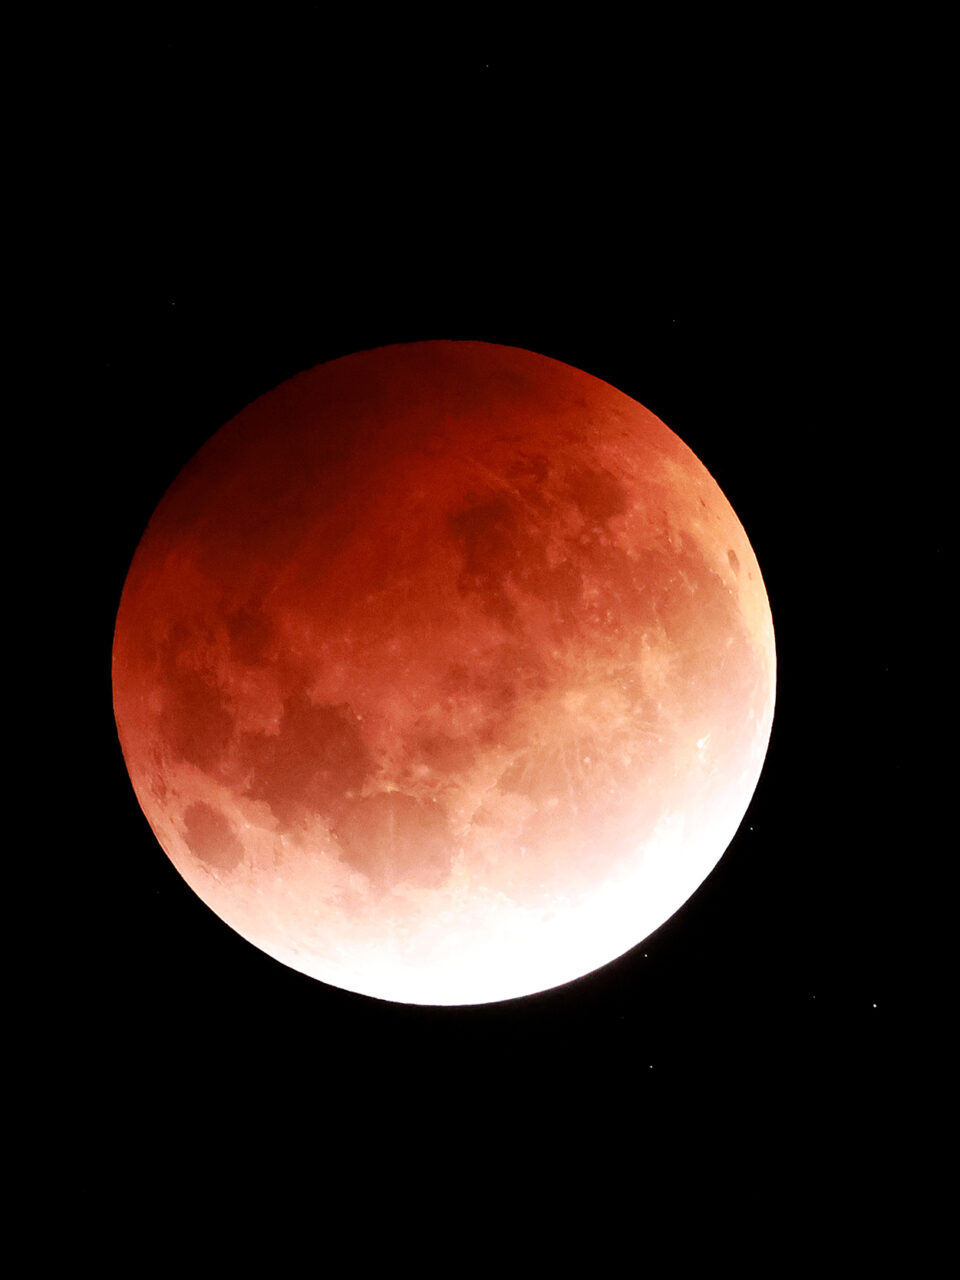 https://astrosoulart.com/wp-content/uploads/2022/05/lunar-eclipse-te-220513-3d2b71-960x1280.jpeg